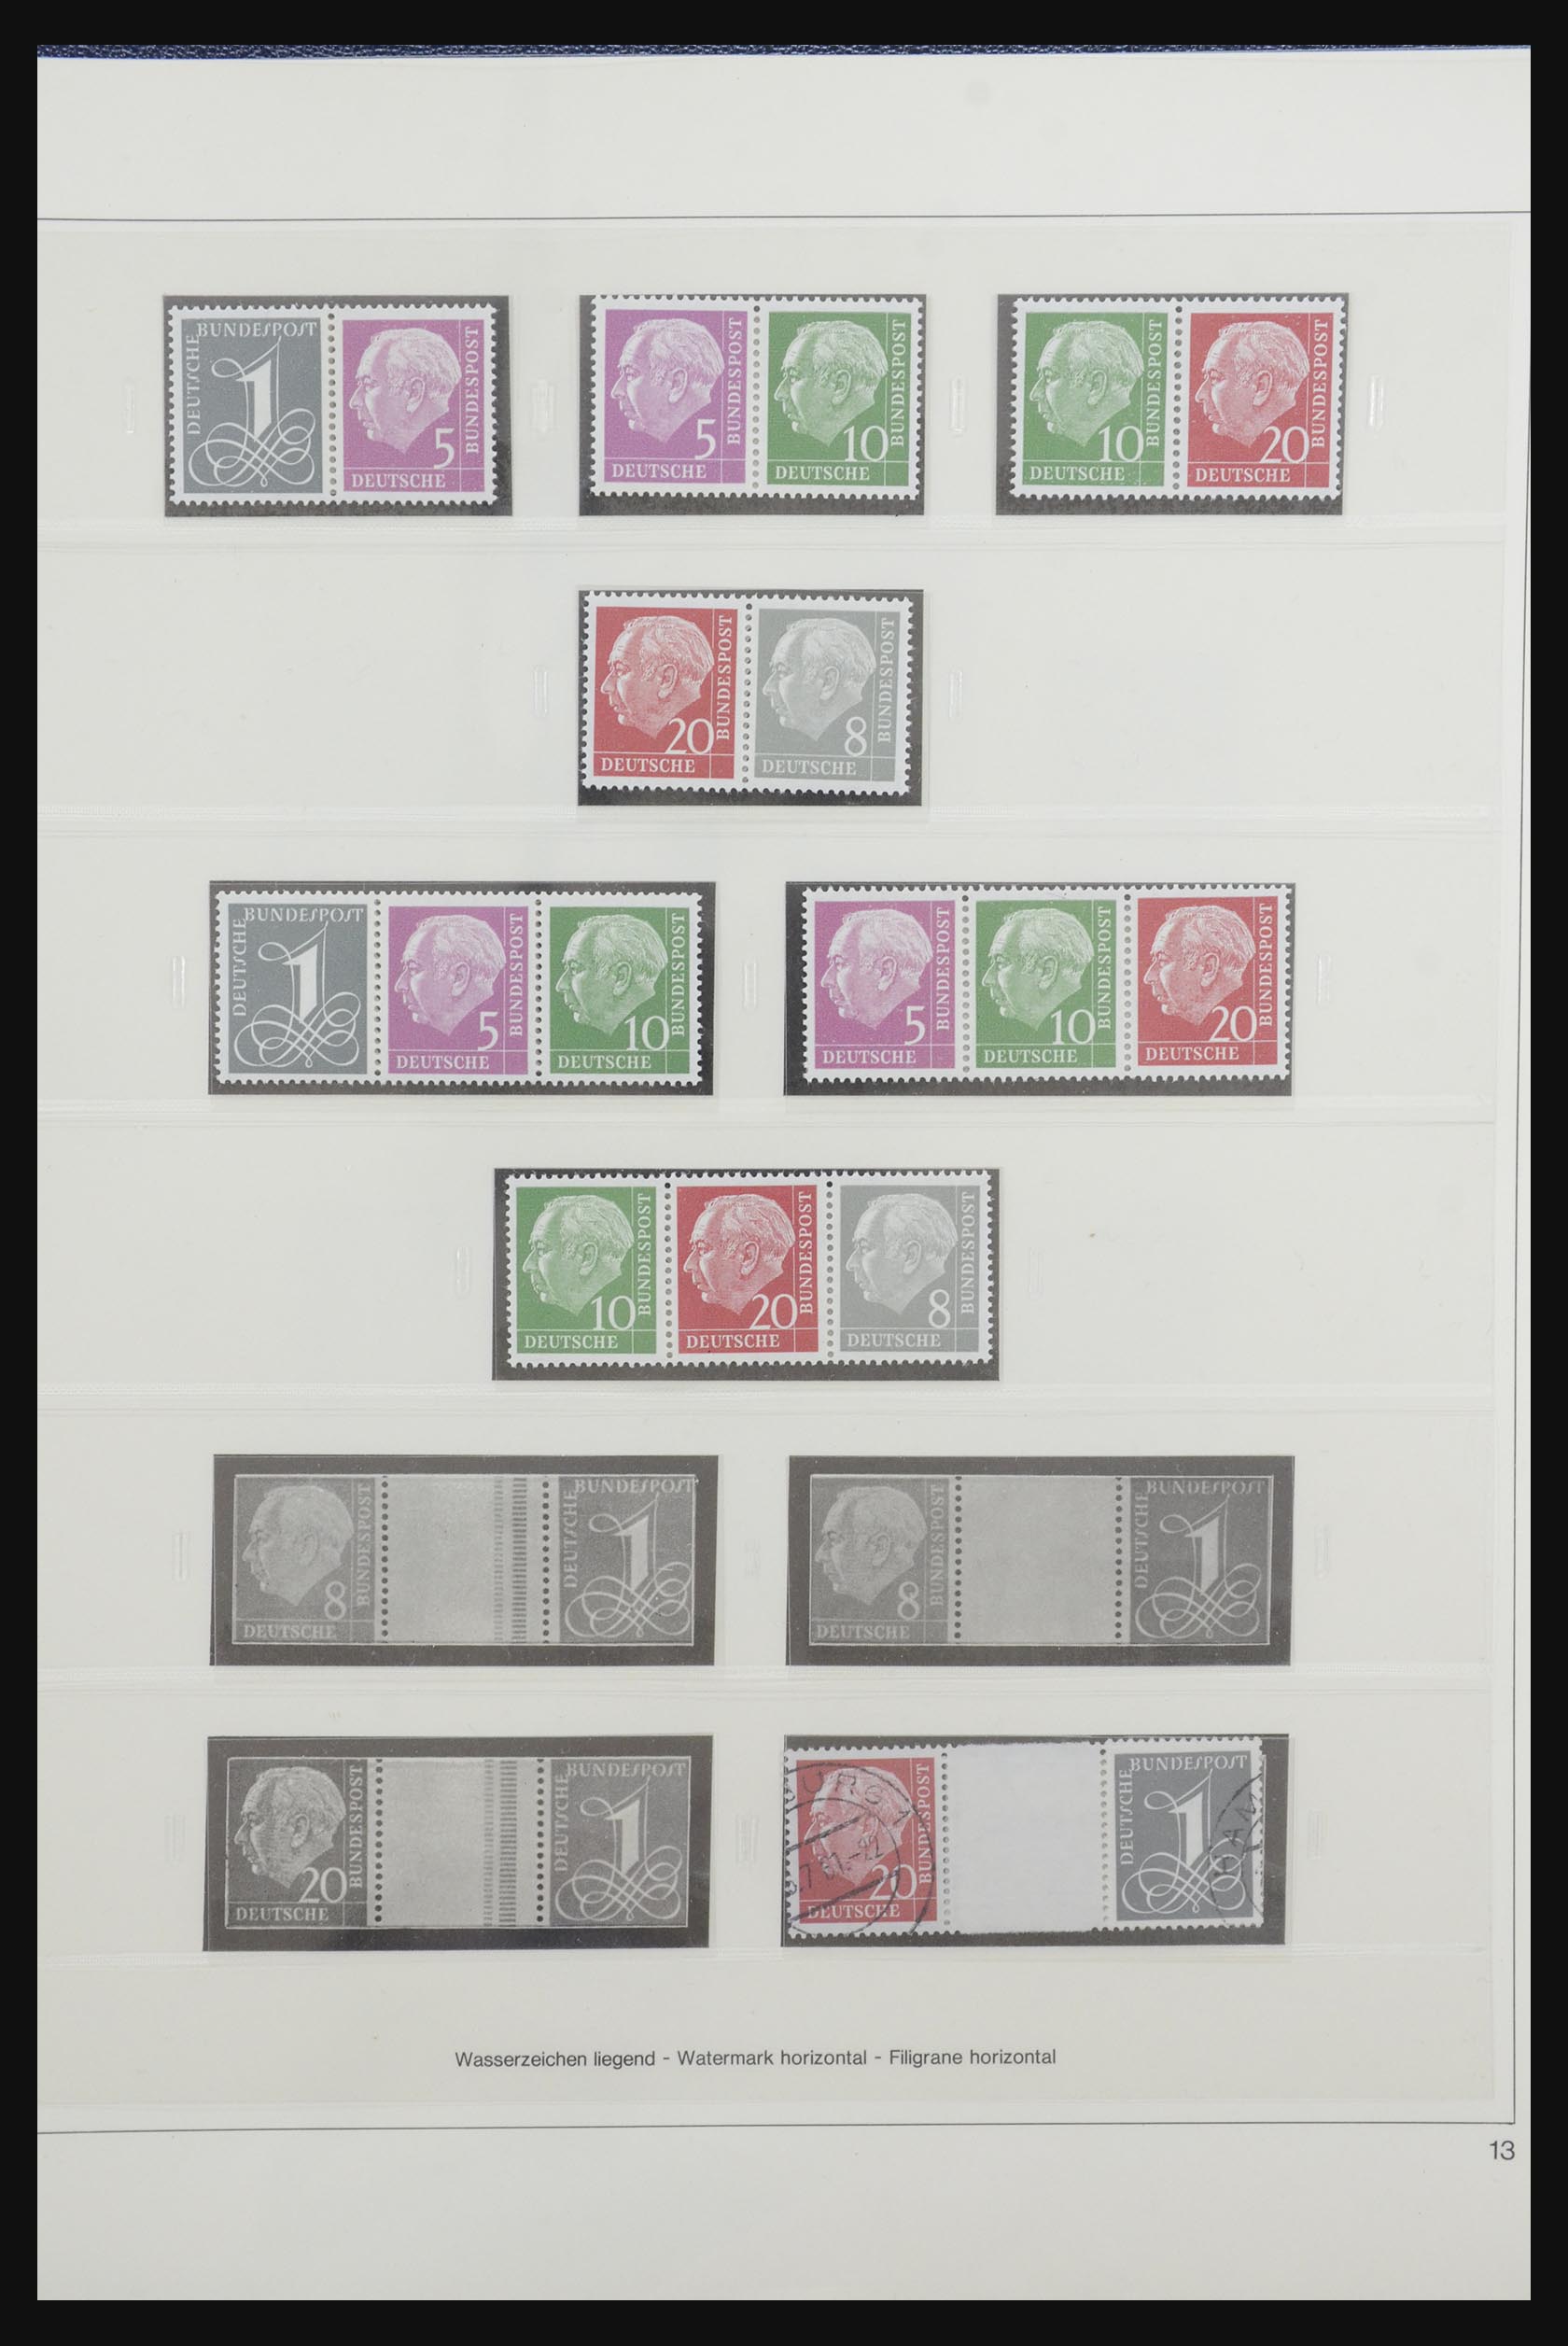 31842 015 - 31842 Bundespost combinaties 1951-2003.